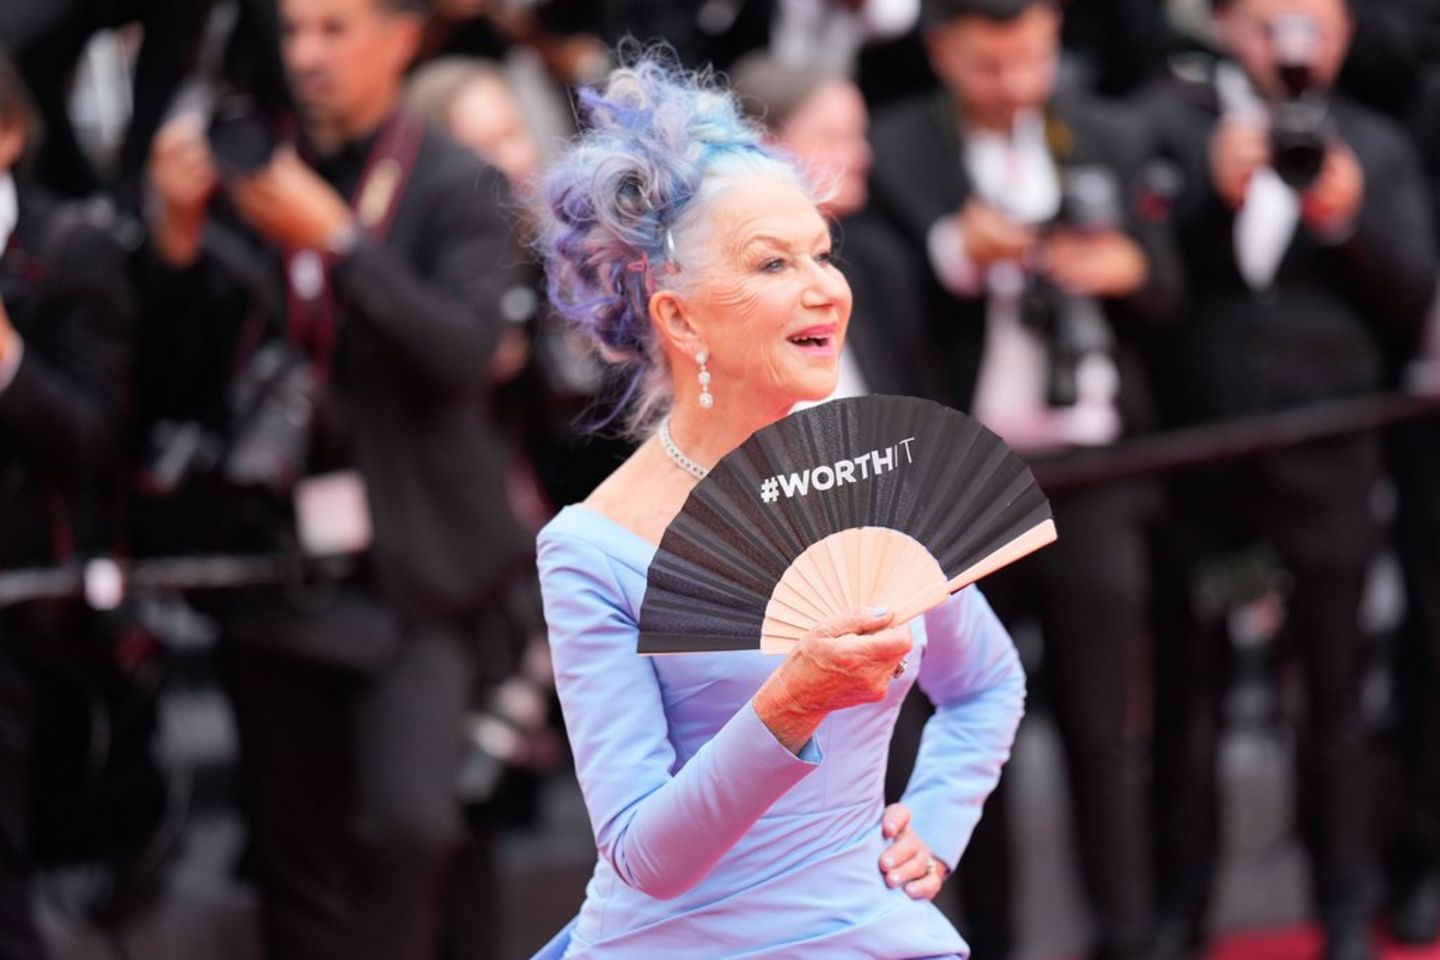 Blaue Haare, blaues Kleid und ein Fächer mit der Aufschrift "Worth It": Dame Helen Mirren bei der Eröffnung der Filmfestspiele